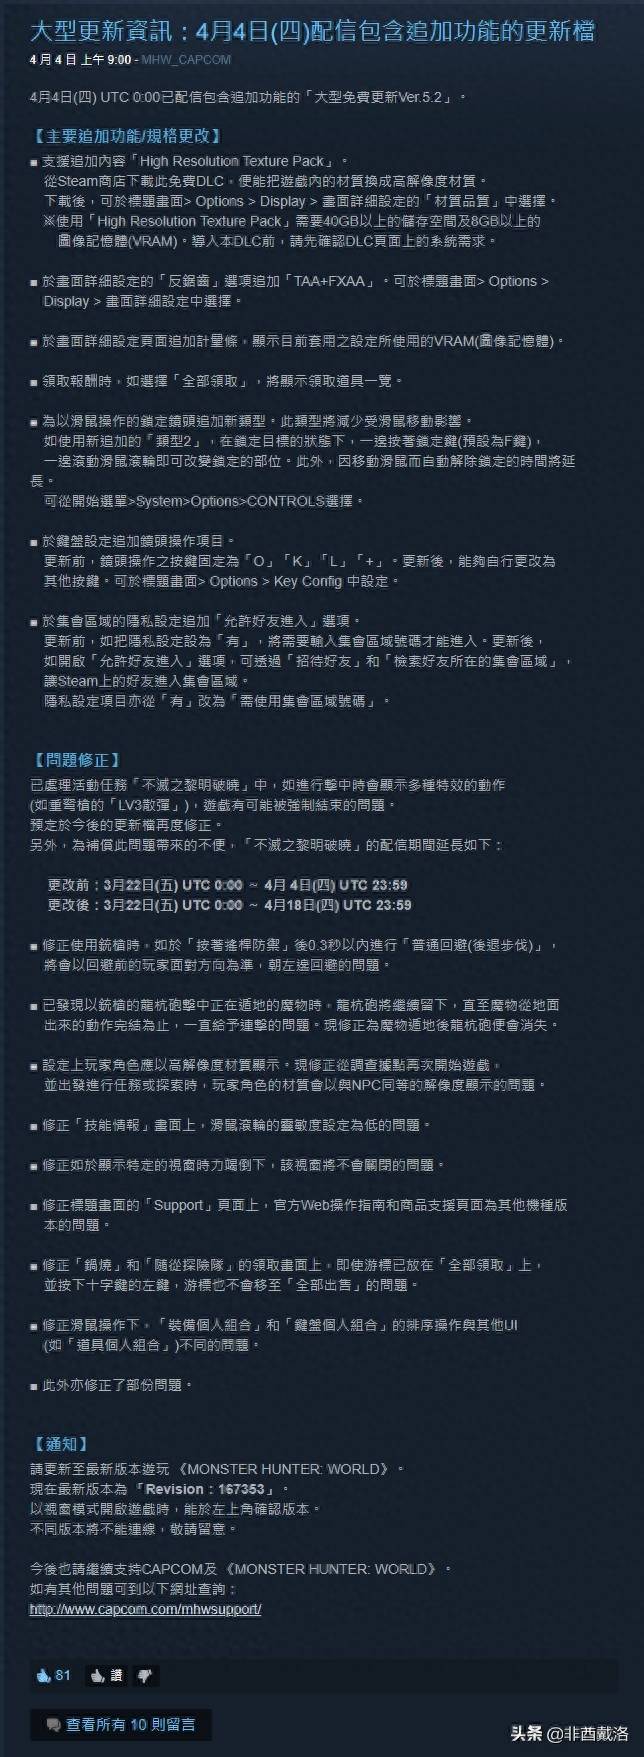 怪物猎人世界简体中文补丁怎么用？怪物猎人世界中文补丁仅限PS4版